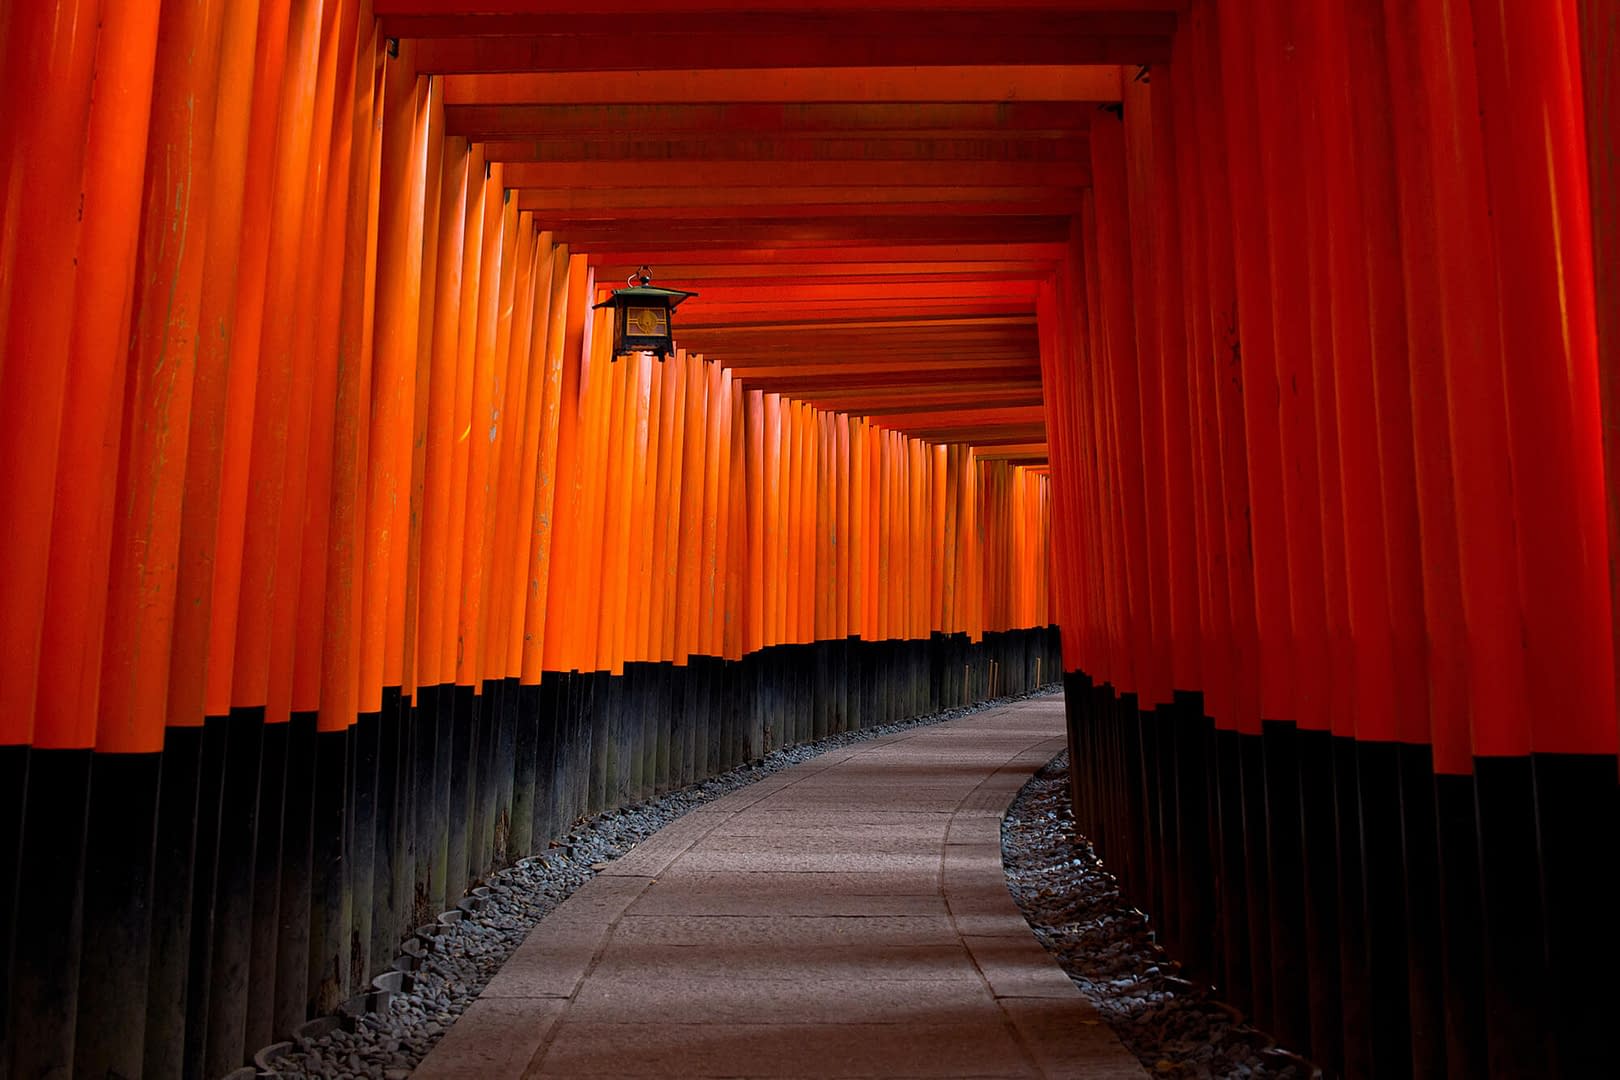 Torii alleyway in Kyoto, Japan